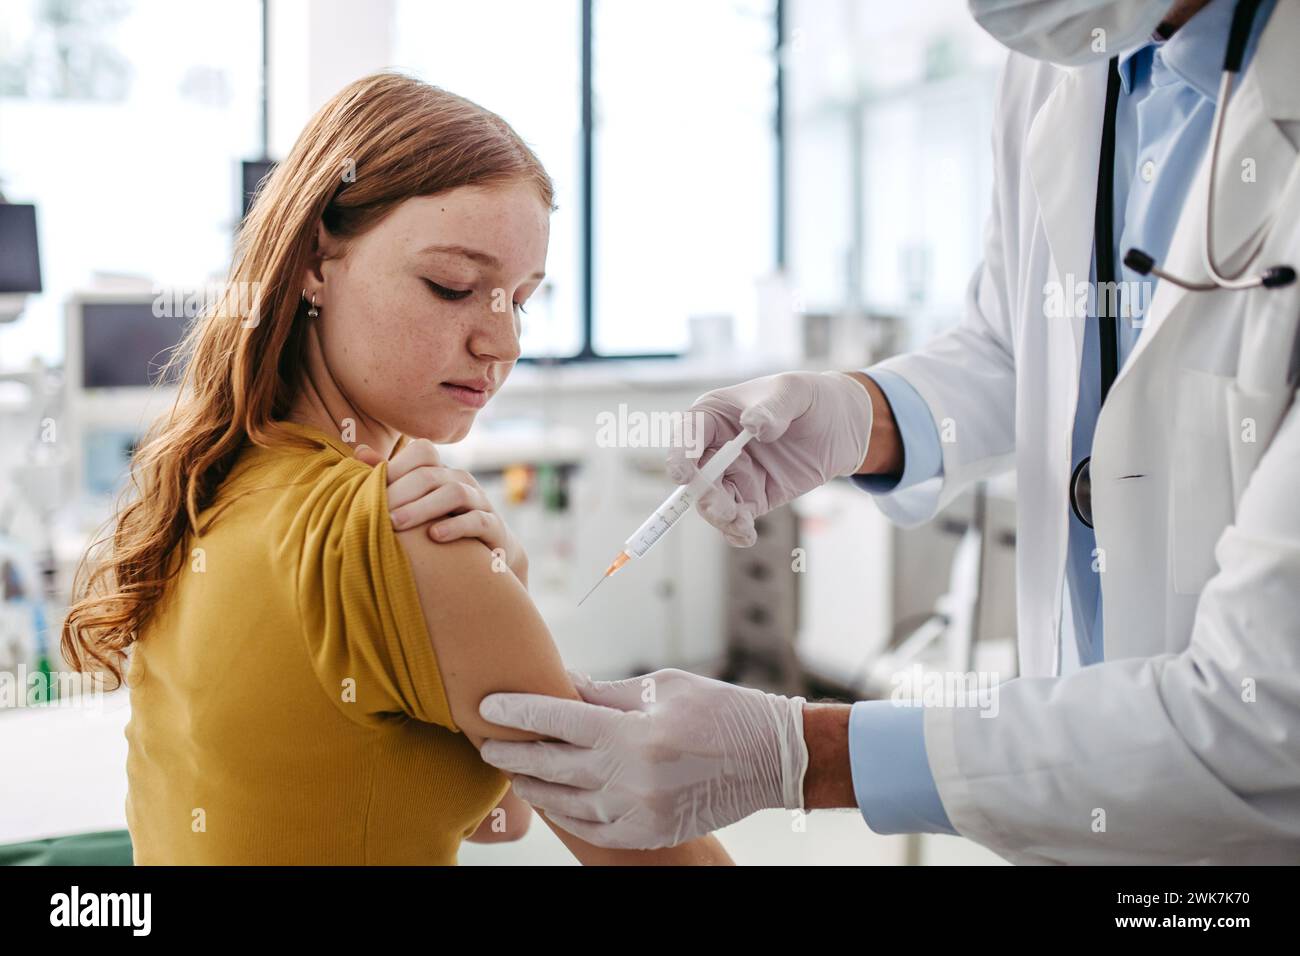 Arzt, Kinderarzt, der Impfstoff in den Arm eines Teenagers injiziert. Konzept der Gesundheitsvorsorge und Impfungen für Jugendliche, Immunisierung. Stockfoto